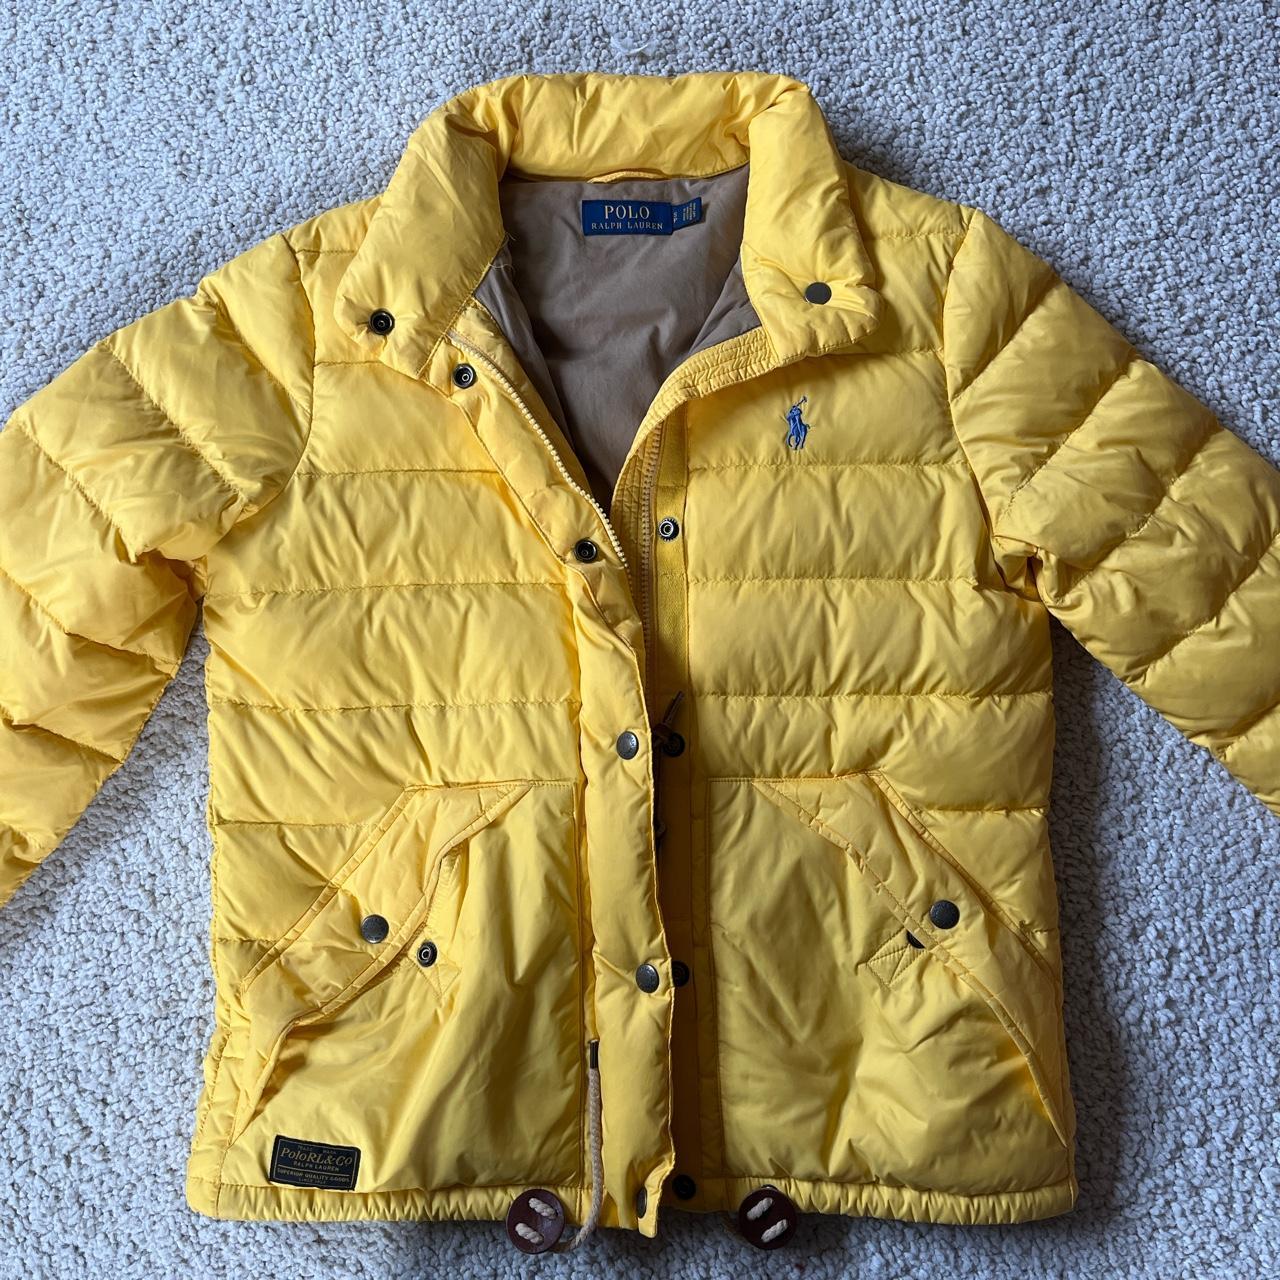 Polo Ralph Lauren Women's Yellow Jacket | Depop